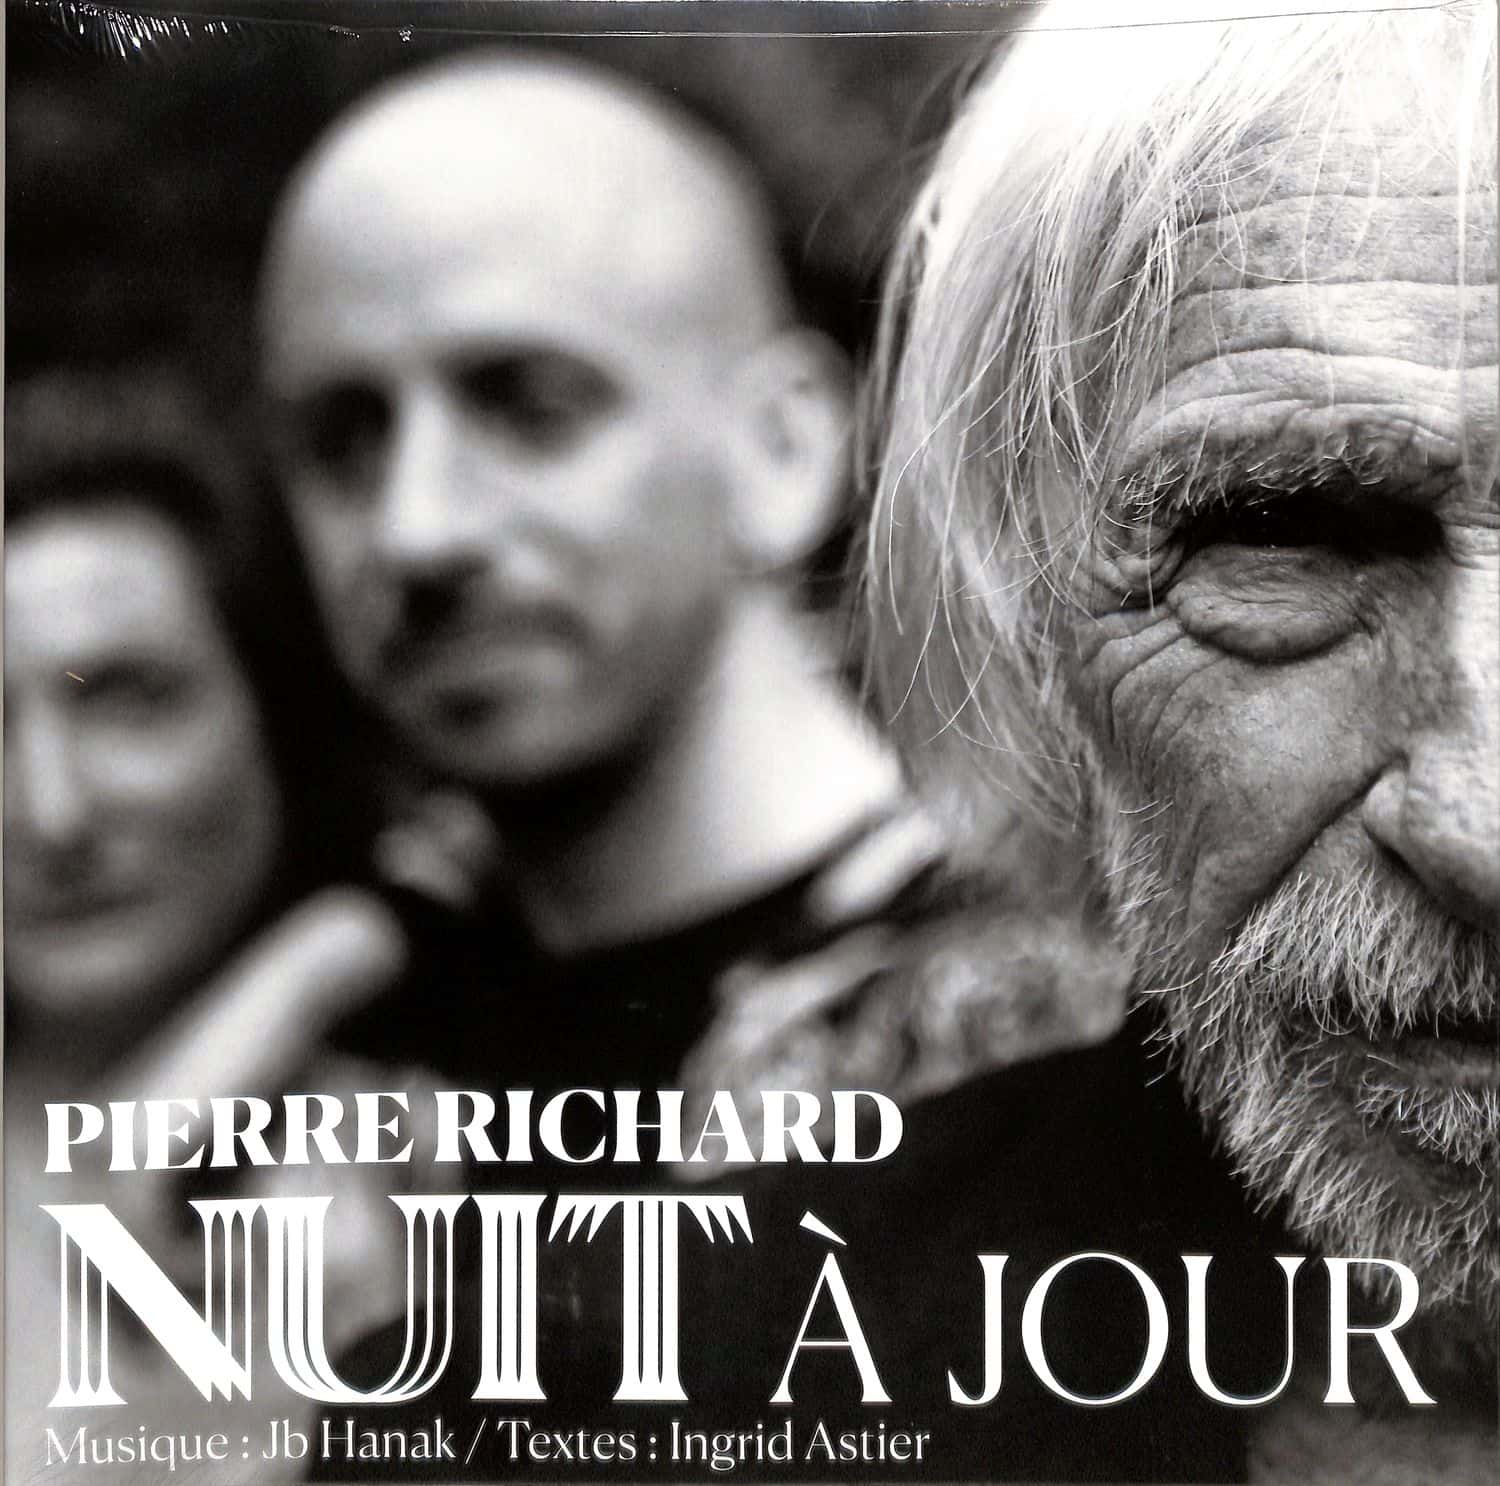 Pierre Richard - NUIT A JOUR 